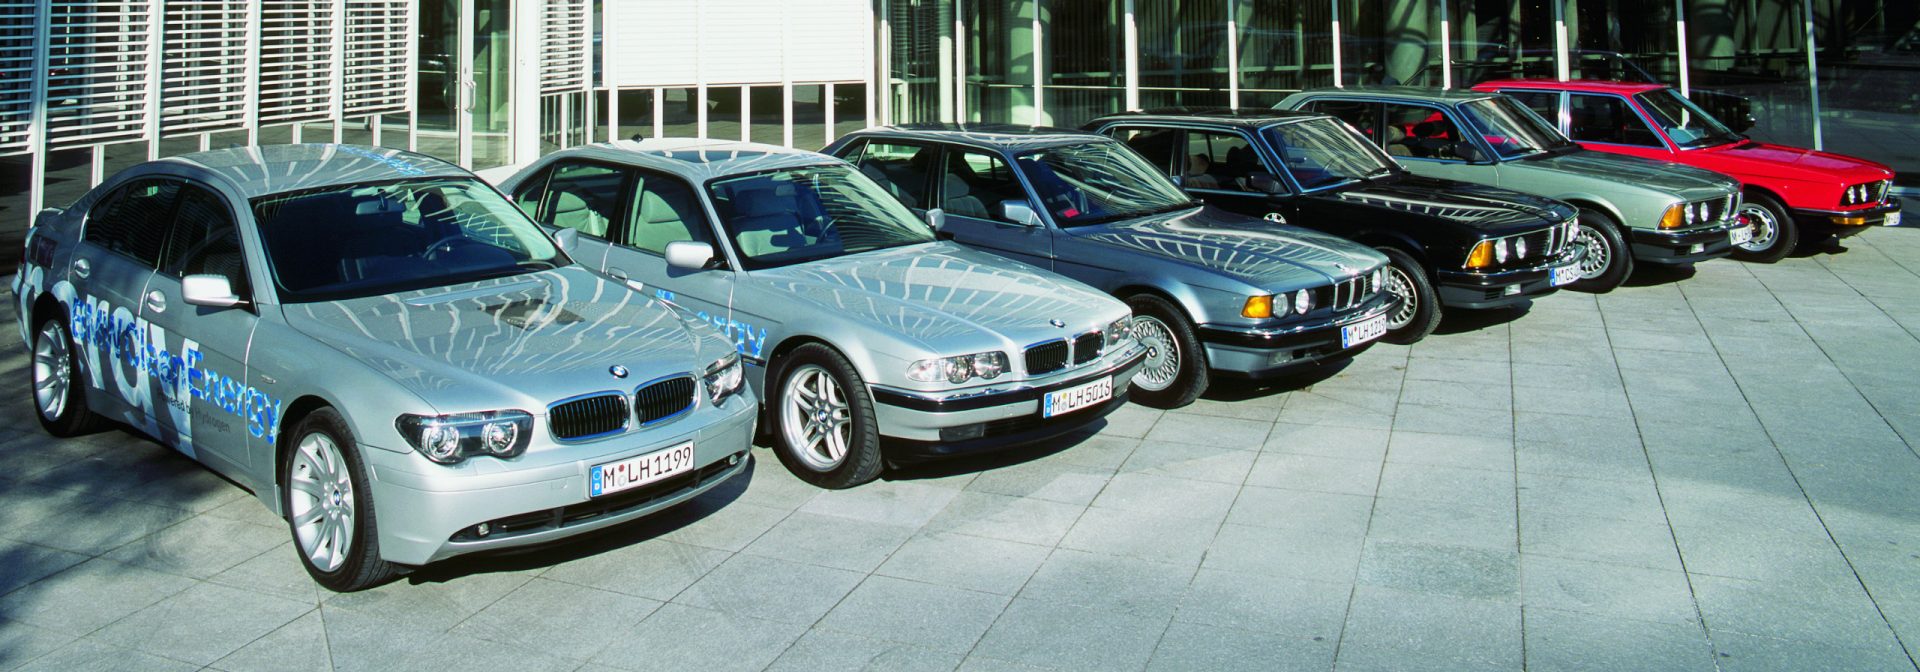 Mehrere BMW Wasserstoff Modelle stehen nebeneinander